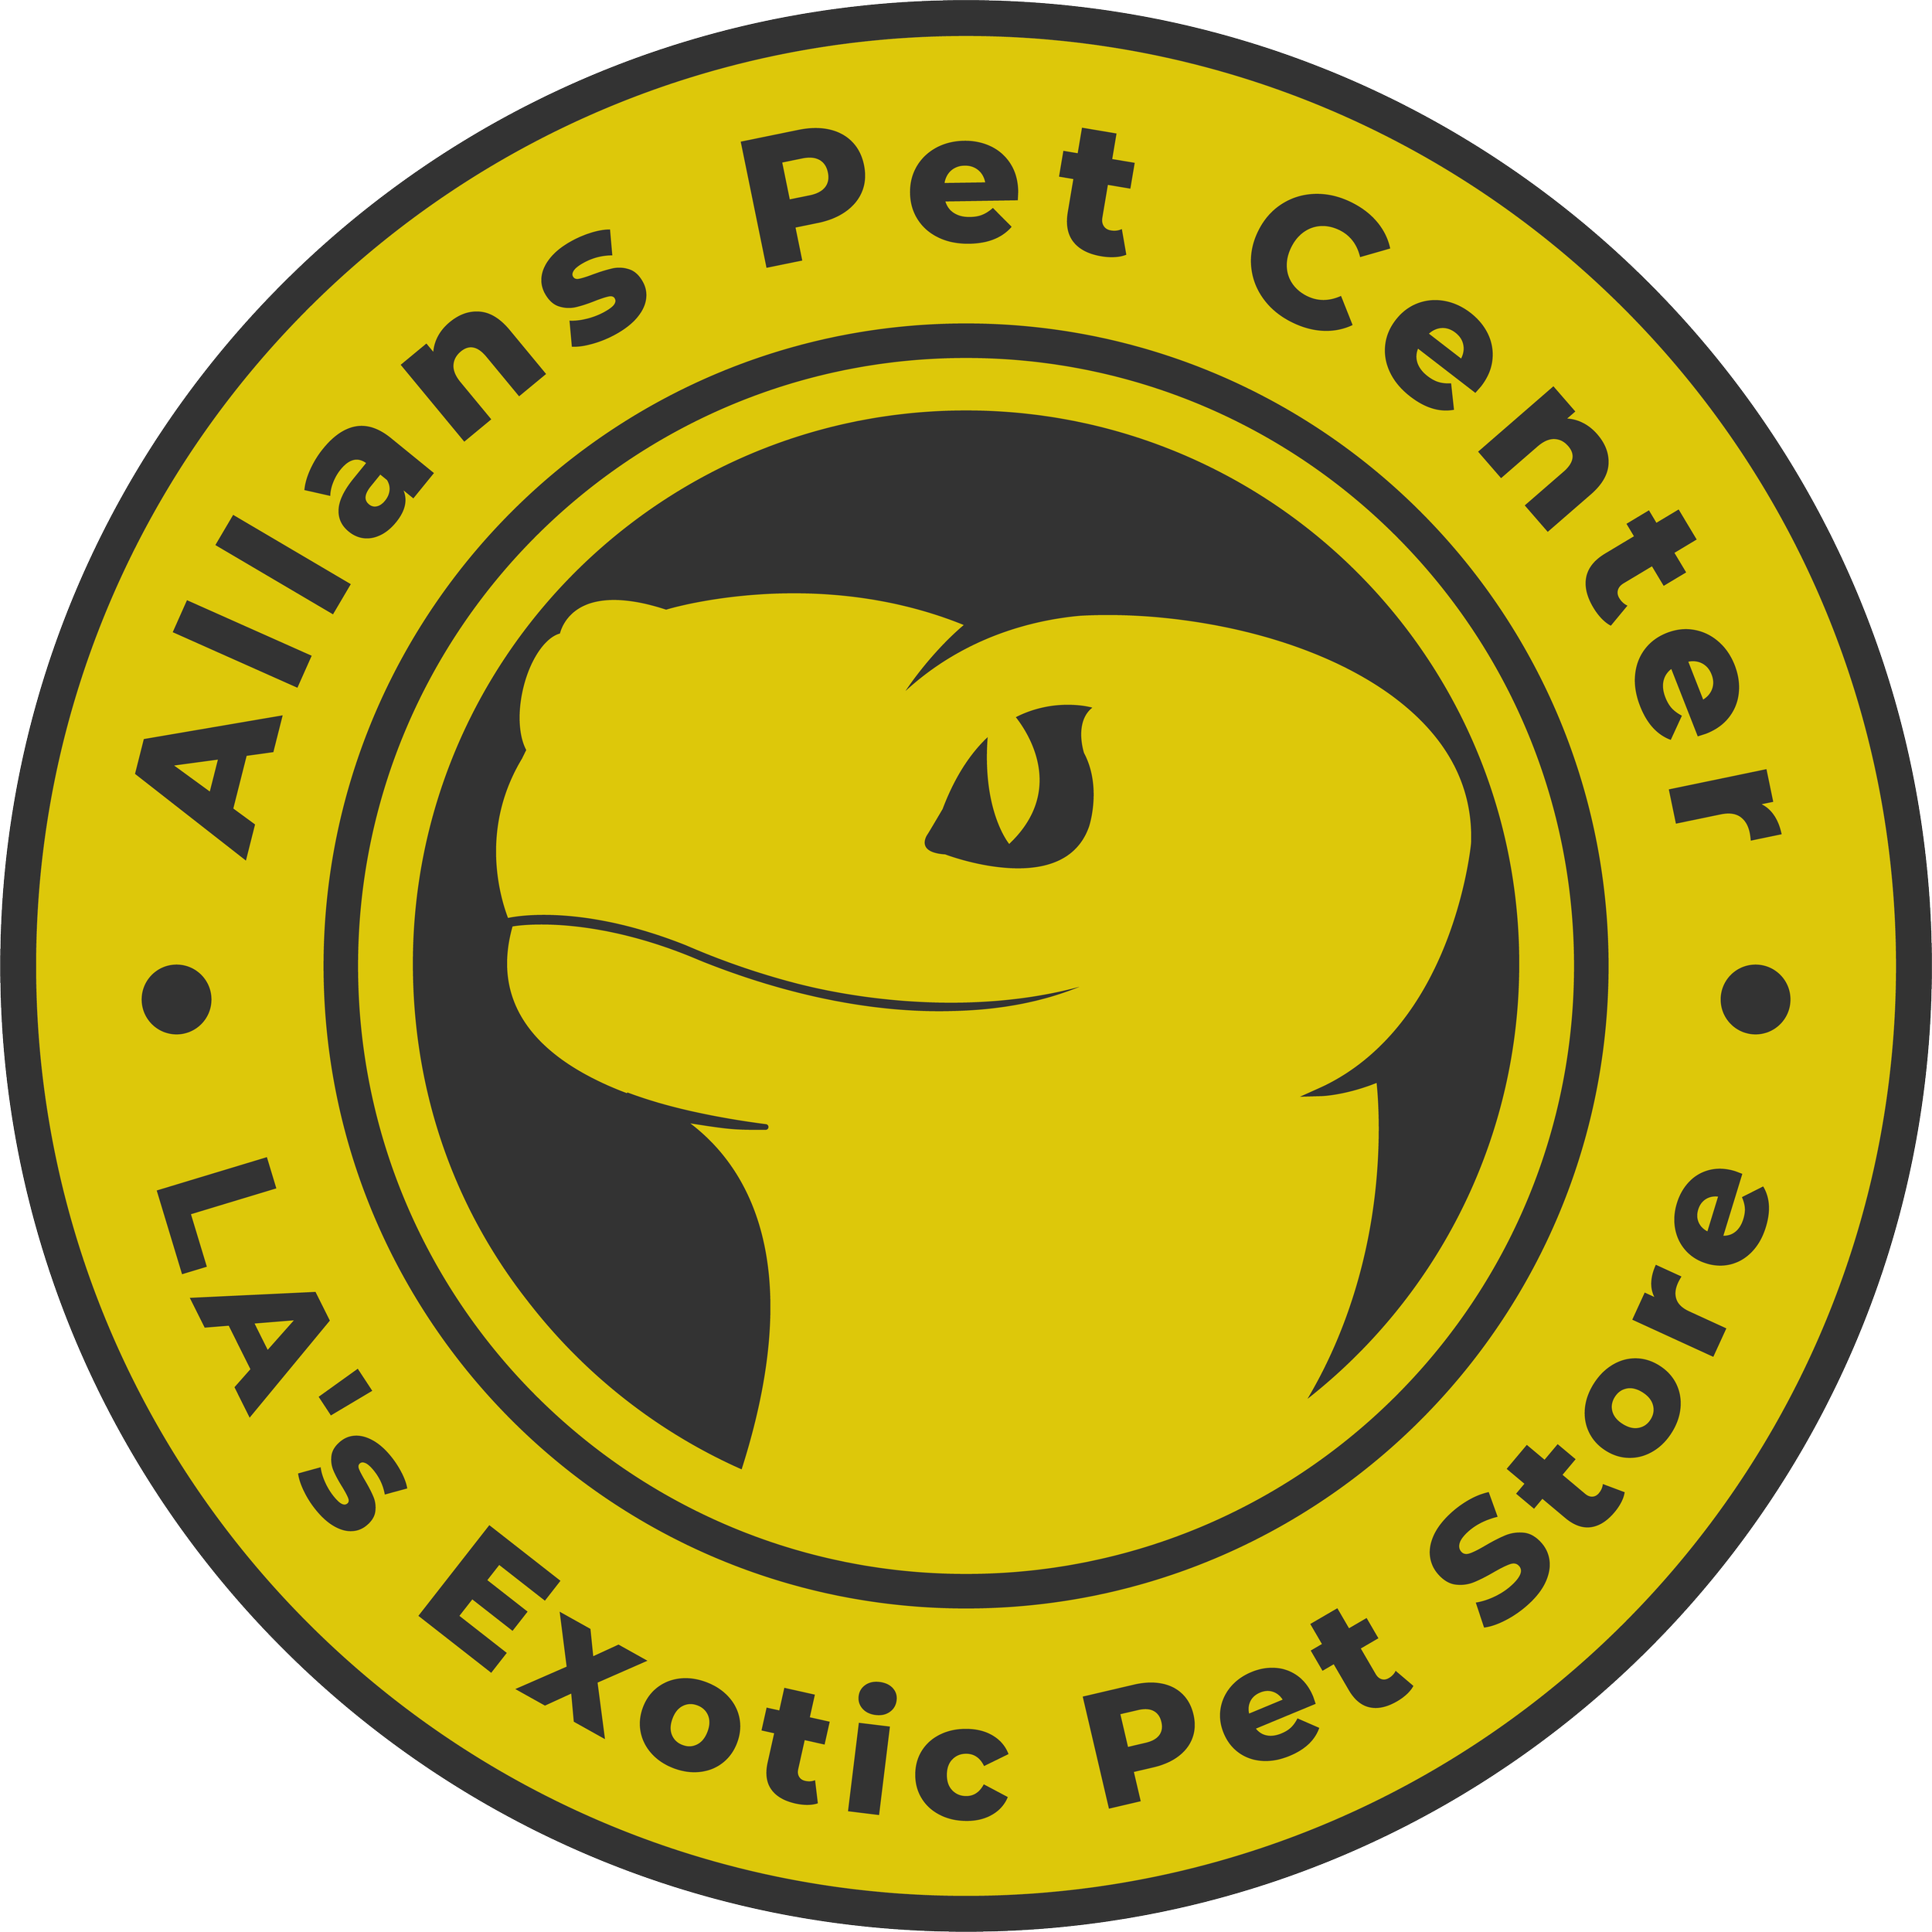 allan's pet center west la (Copy) (Copy)